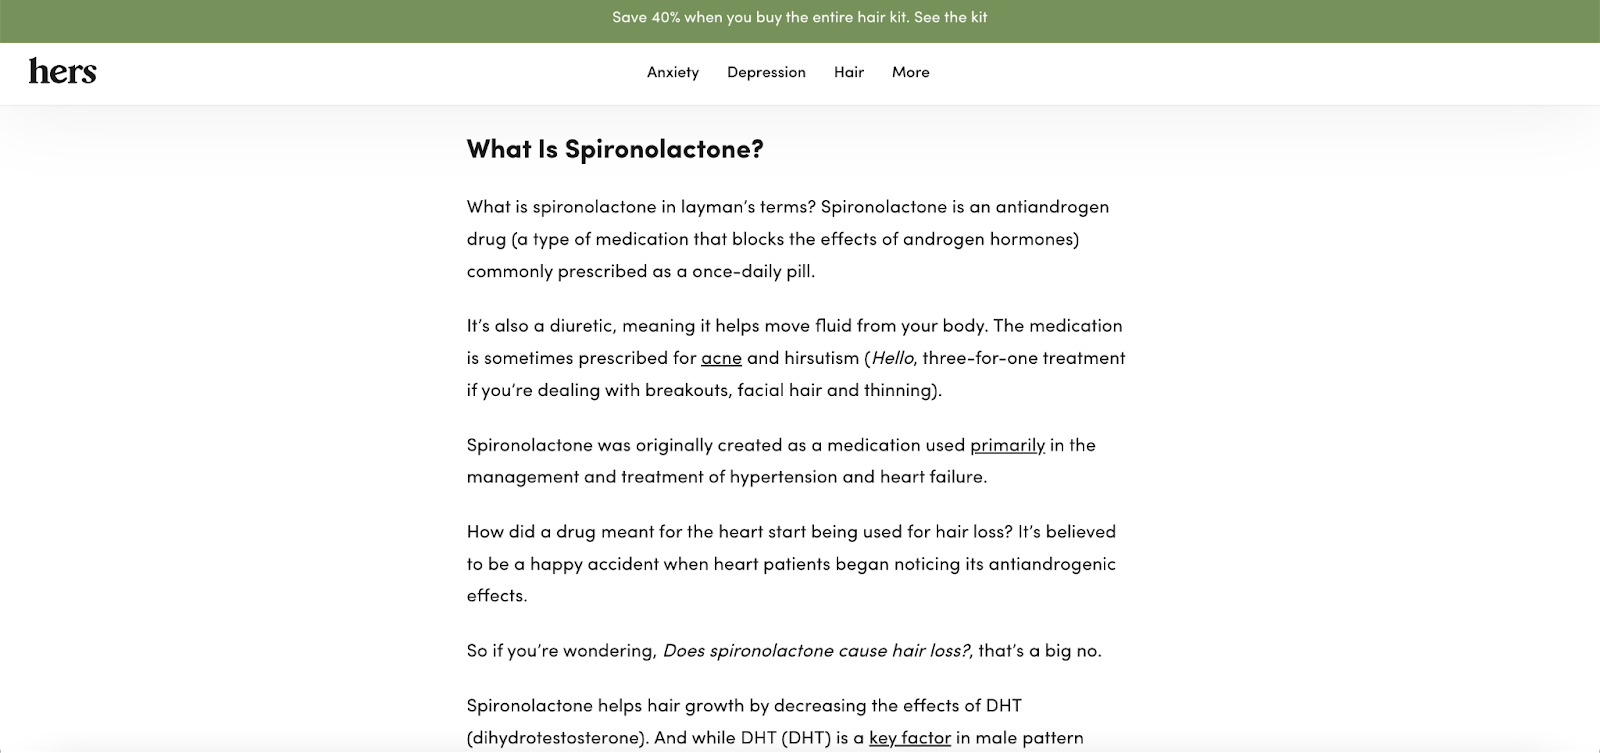 L'image montre une description de la Spironolactone, l'un des produits de Hers. Il s'agit d'un effort visant à fournir aux utilisateurs des détails clairs sur le produit.